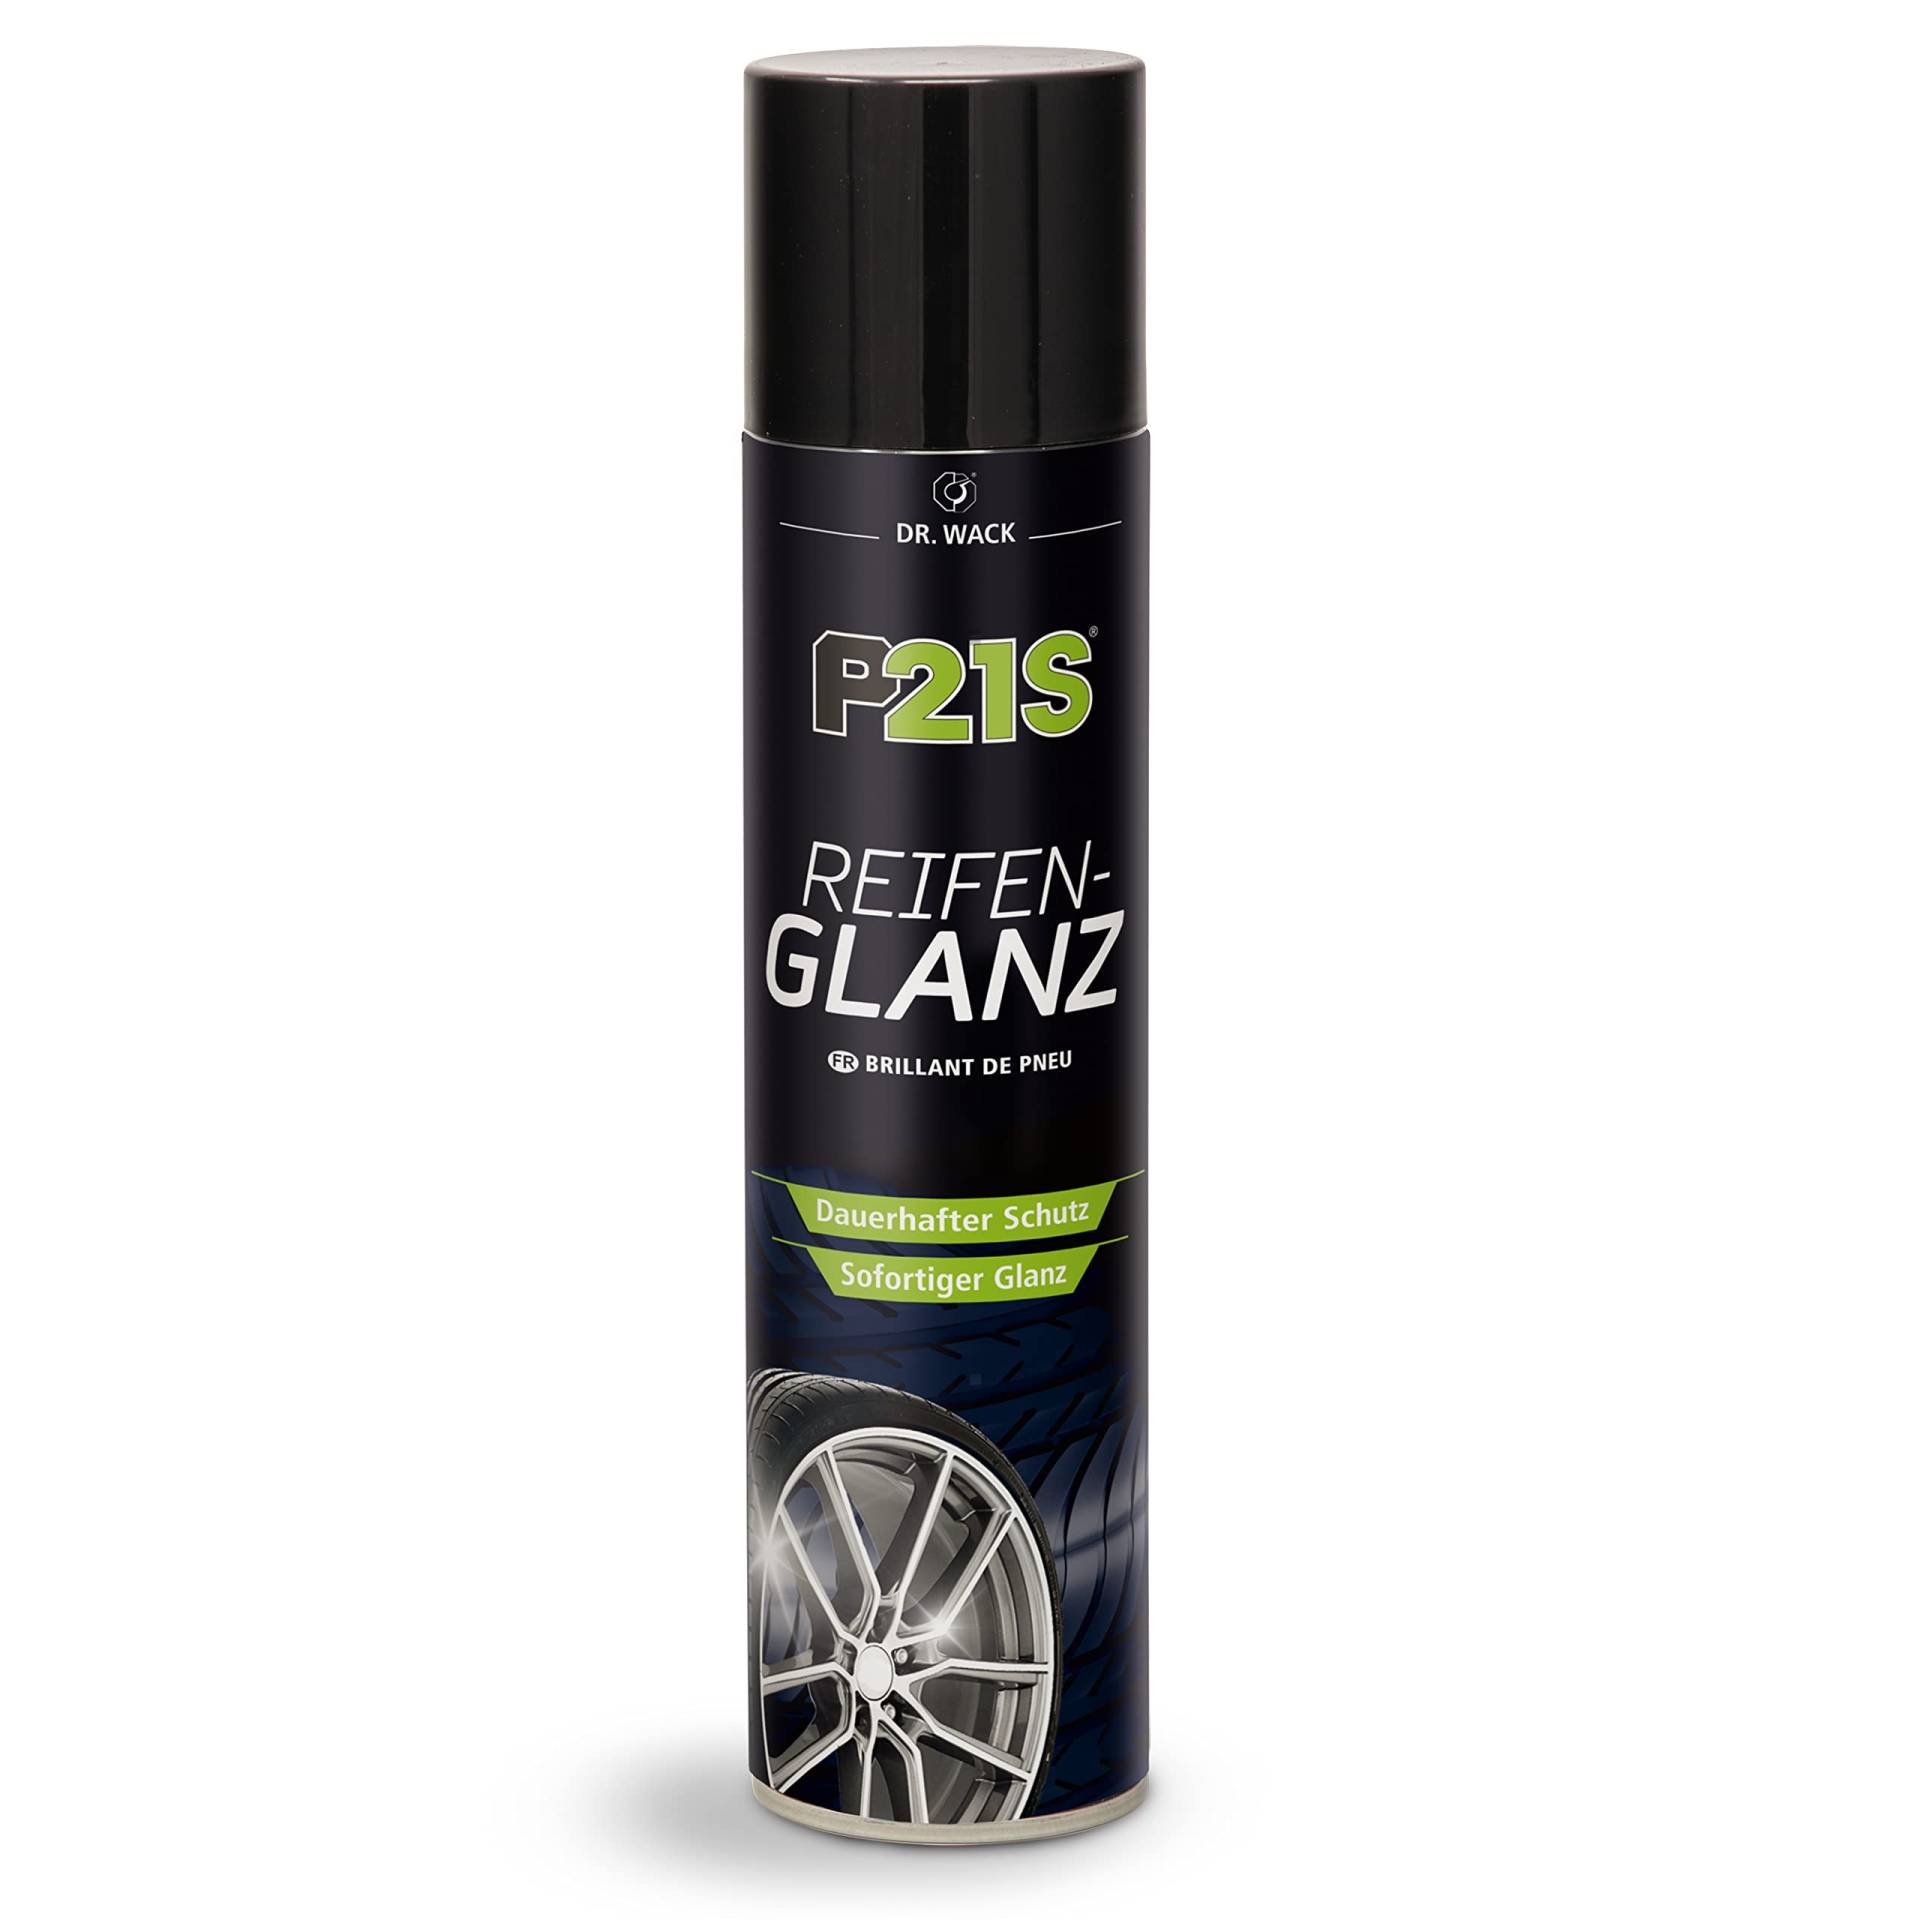 Dr. Wack – P21S Reifen-Glanz 400 ml I Premium Auto-Reifen-Pflege für alle Reifen I Sofort neuer Glanz für verblasste , Hochwertige Reifenpflege – Made in Germany von DR. WACK